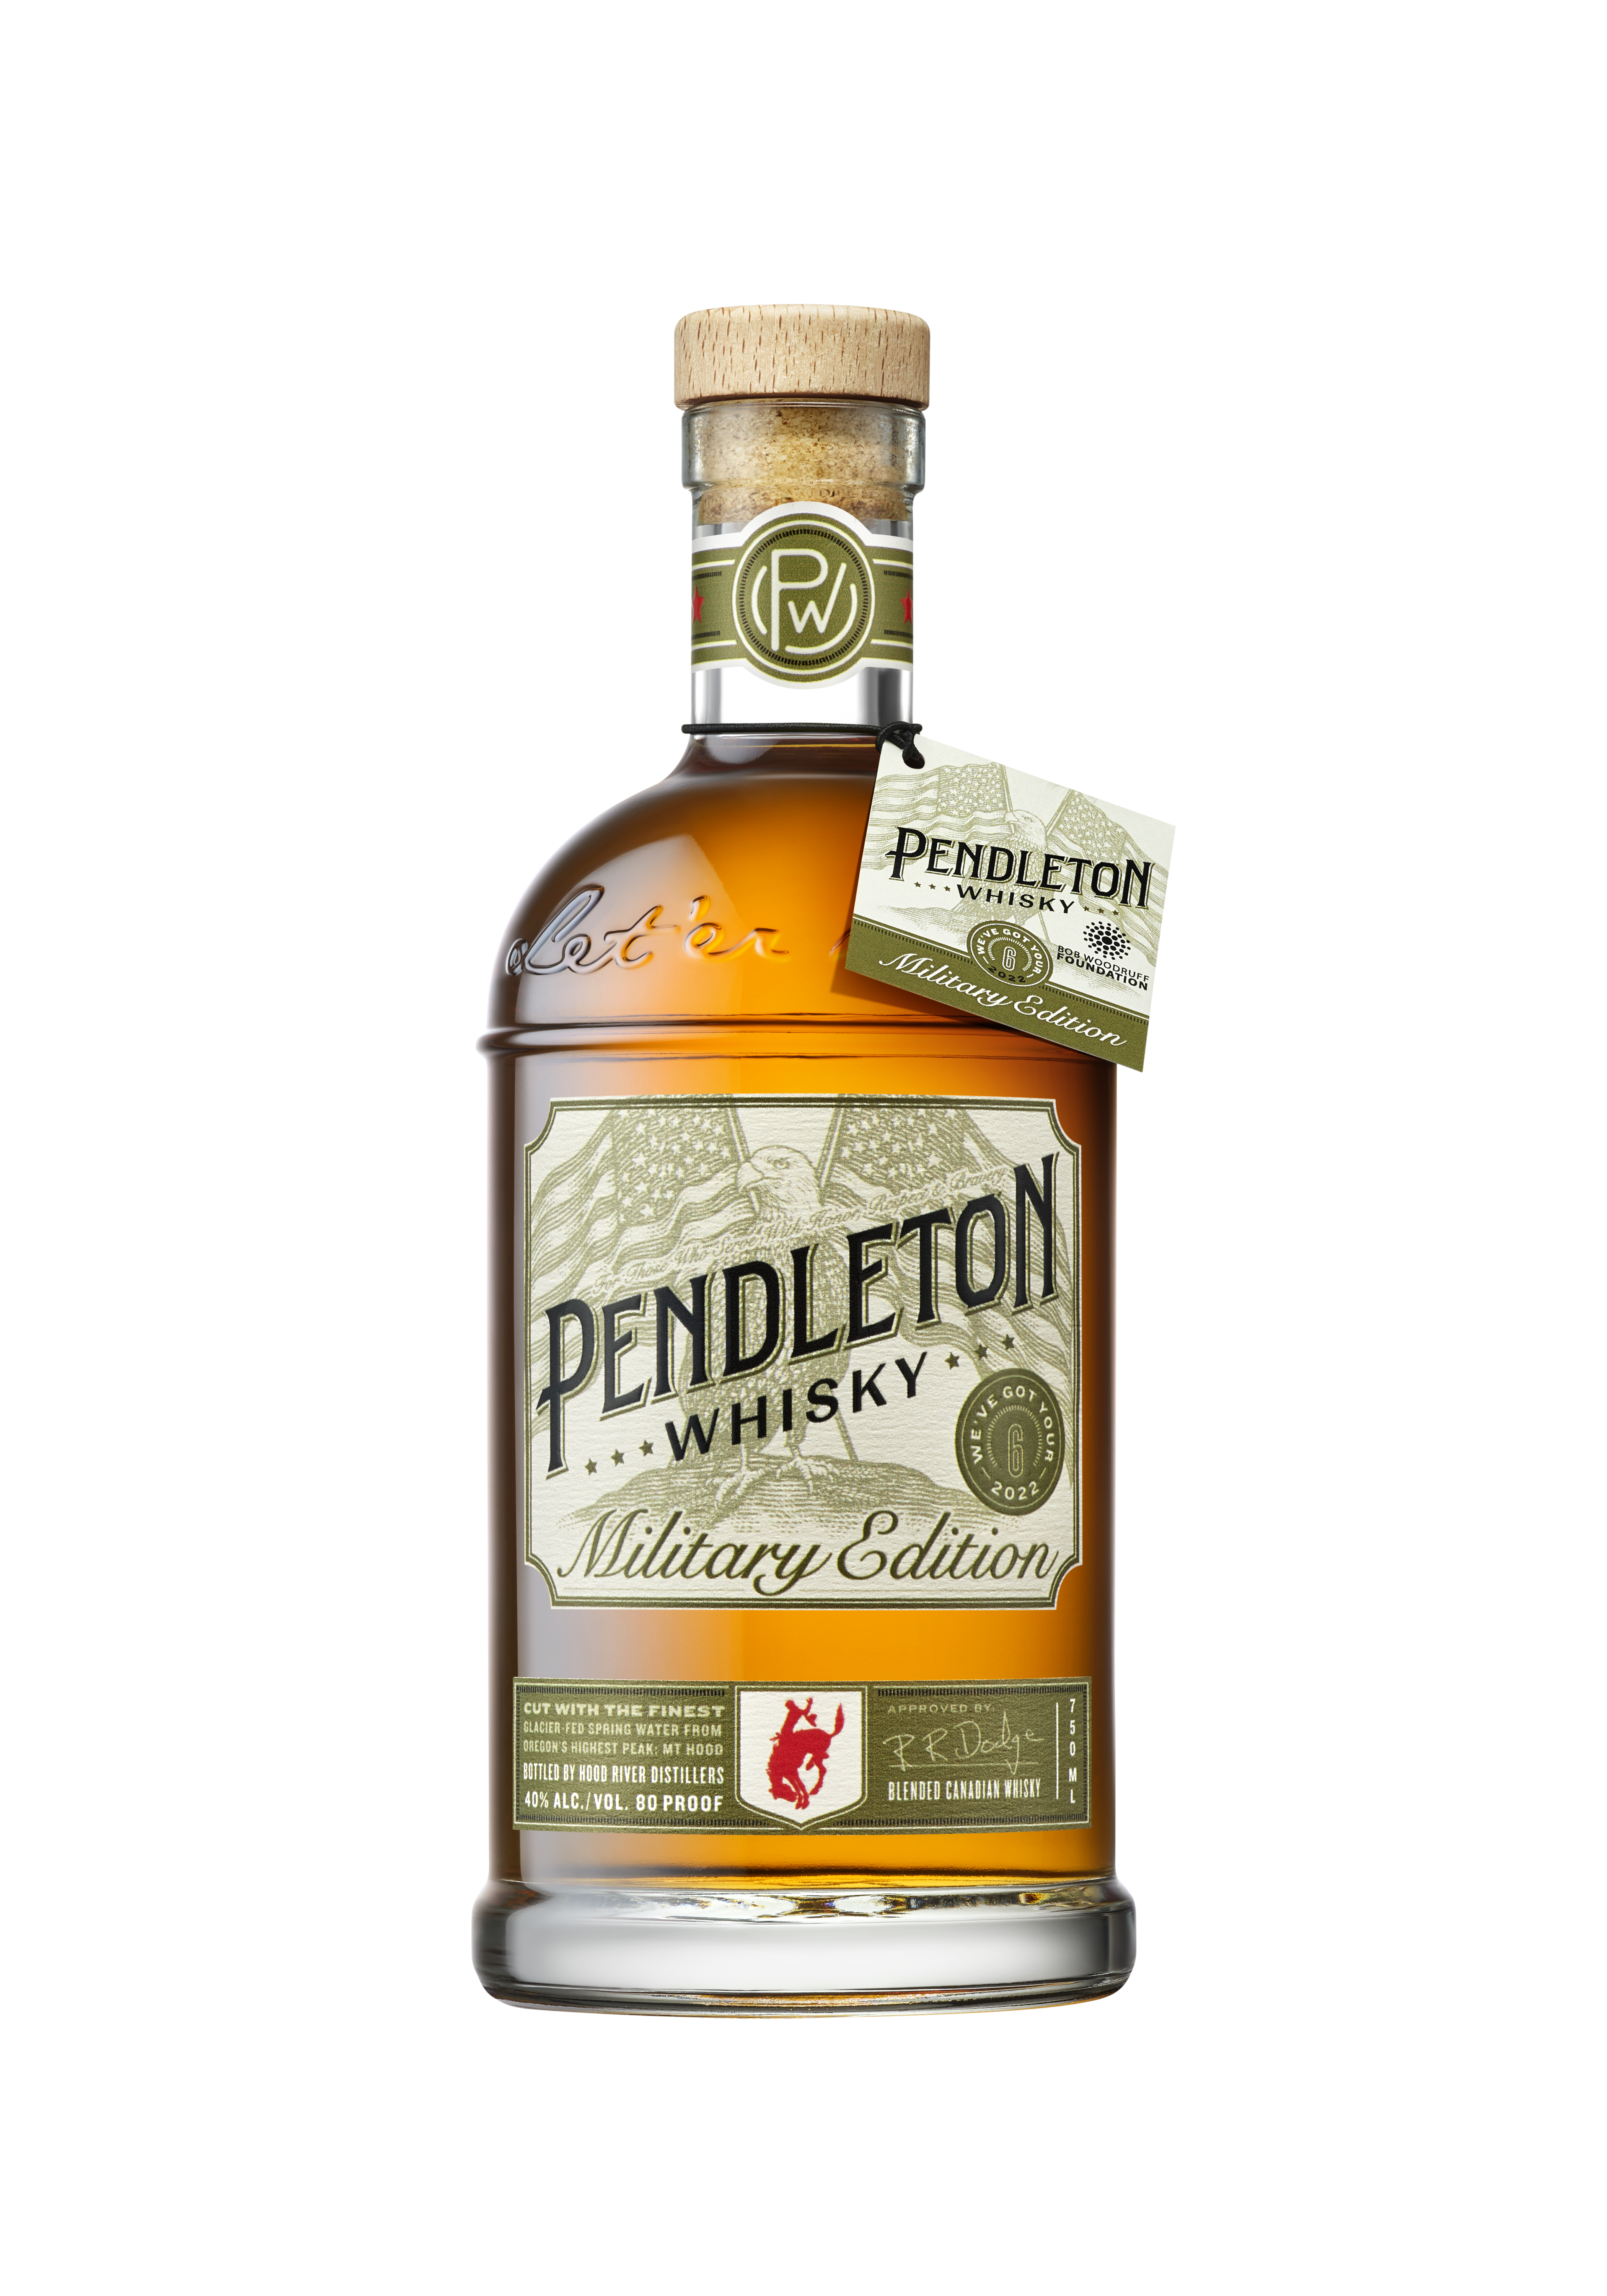 Pendleton Blended Canadian Whisky 1L - Liquor Store New York